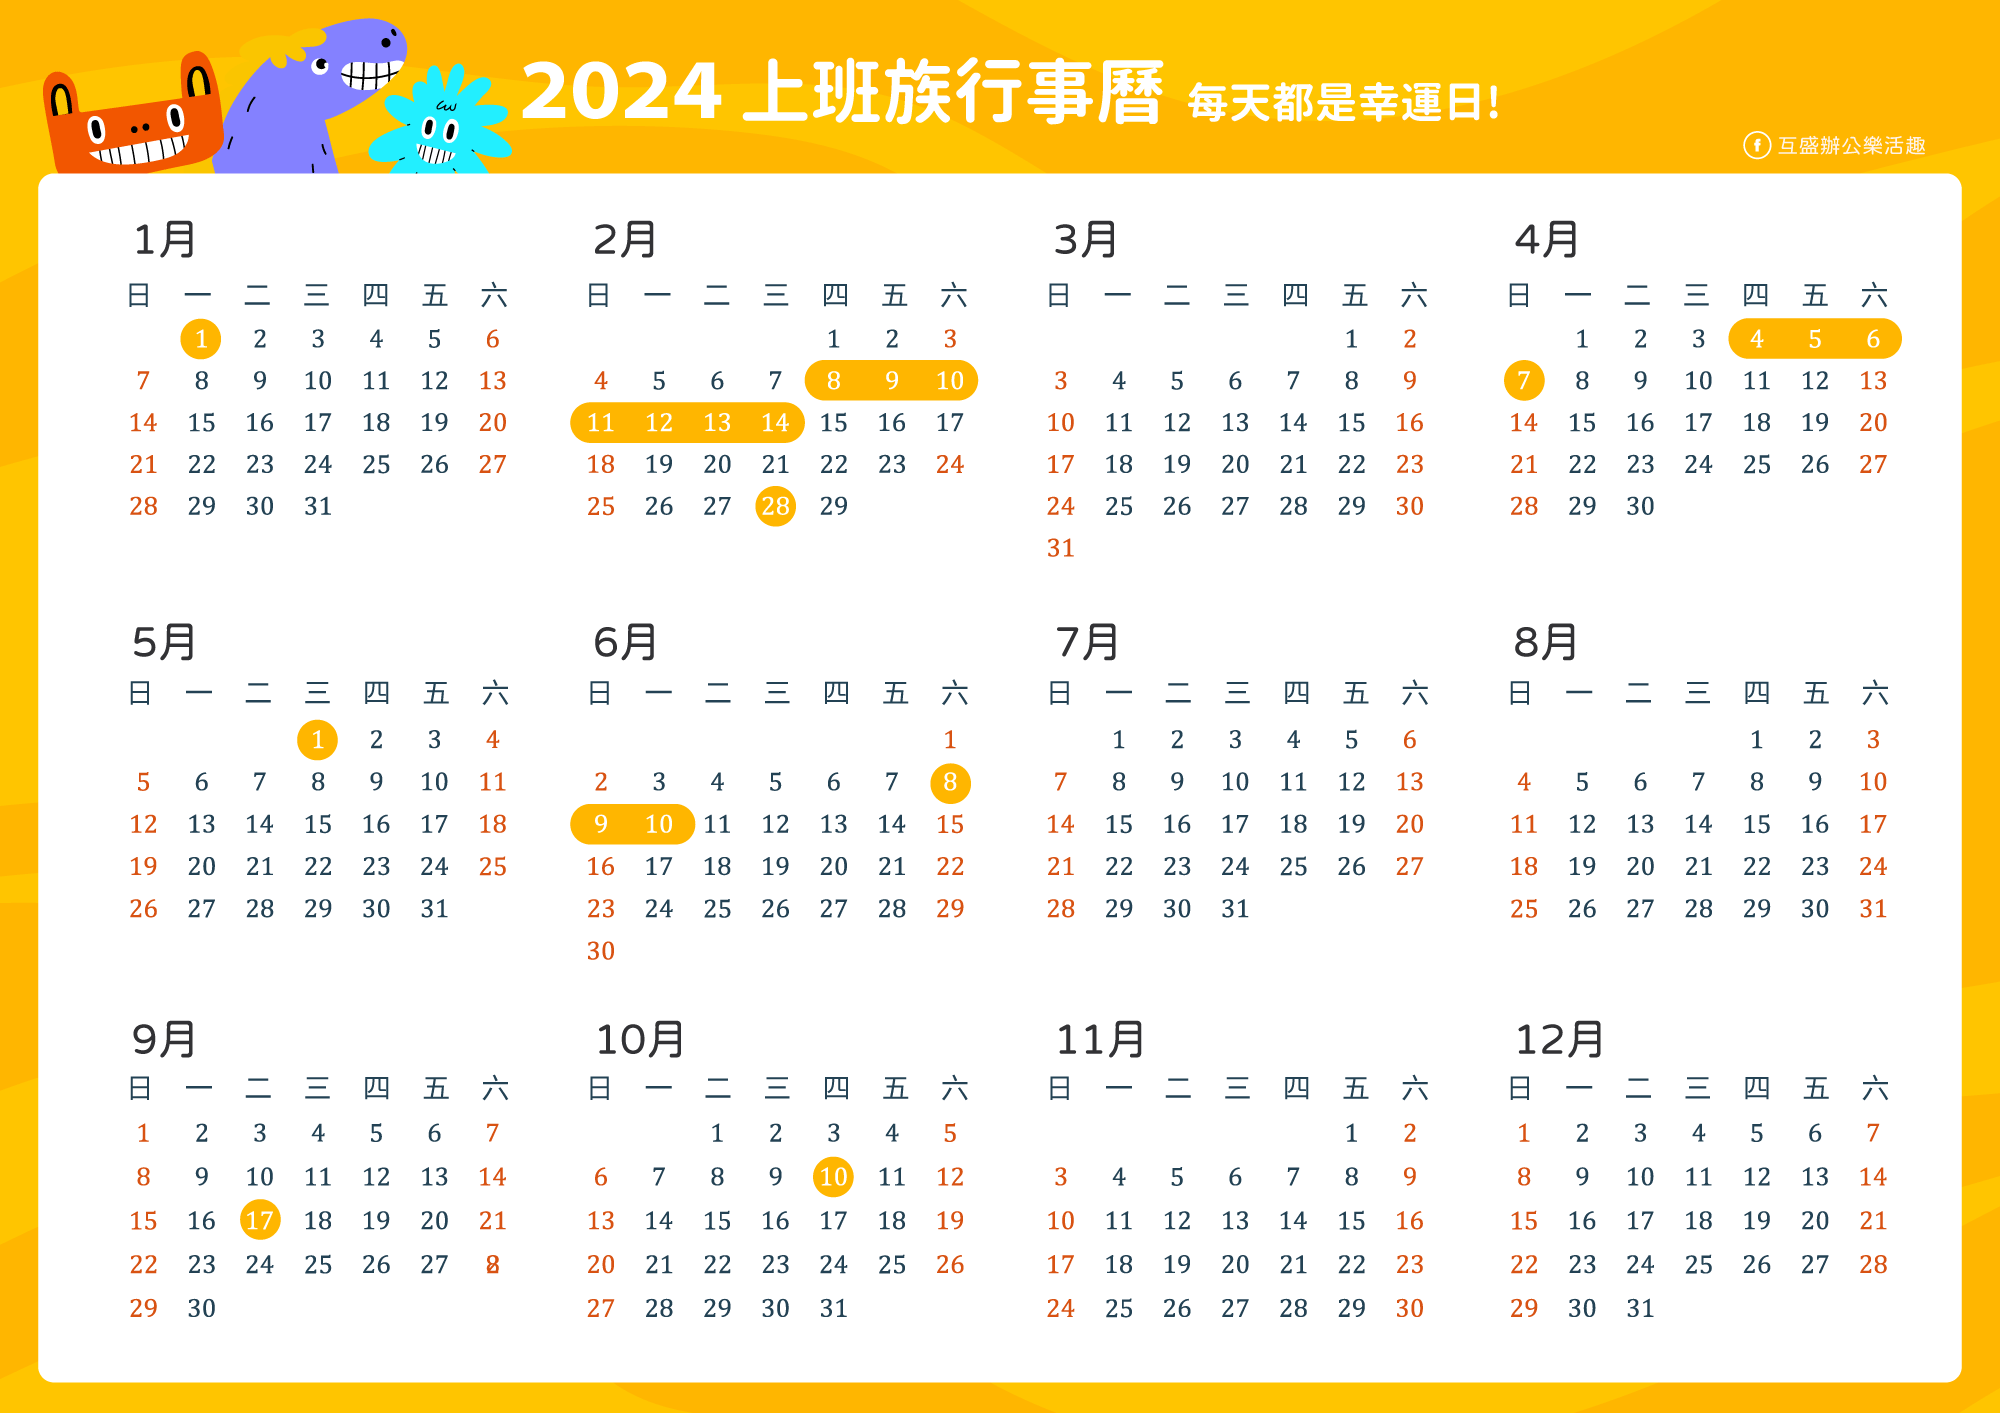 2024行事曆_2024連假_113年人事行政局行事曆